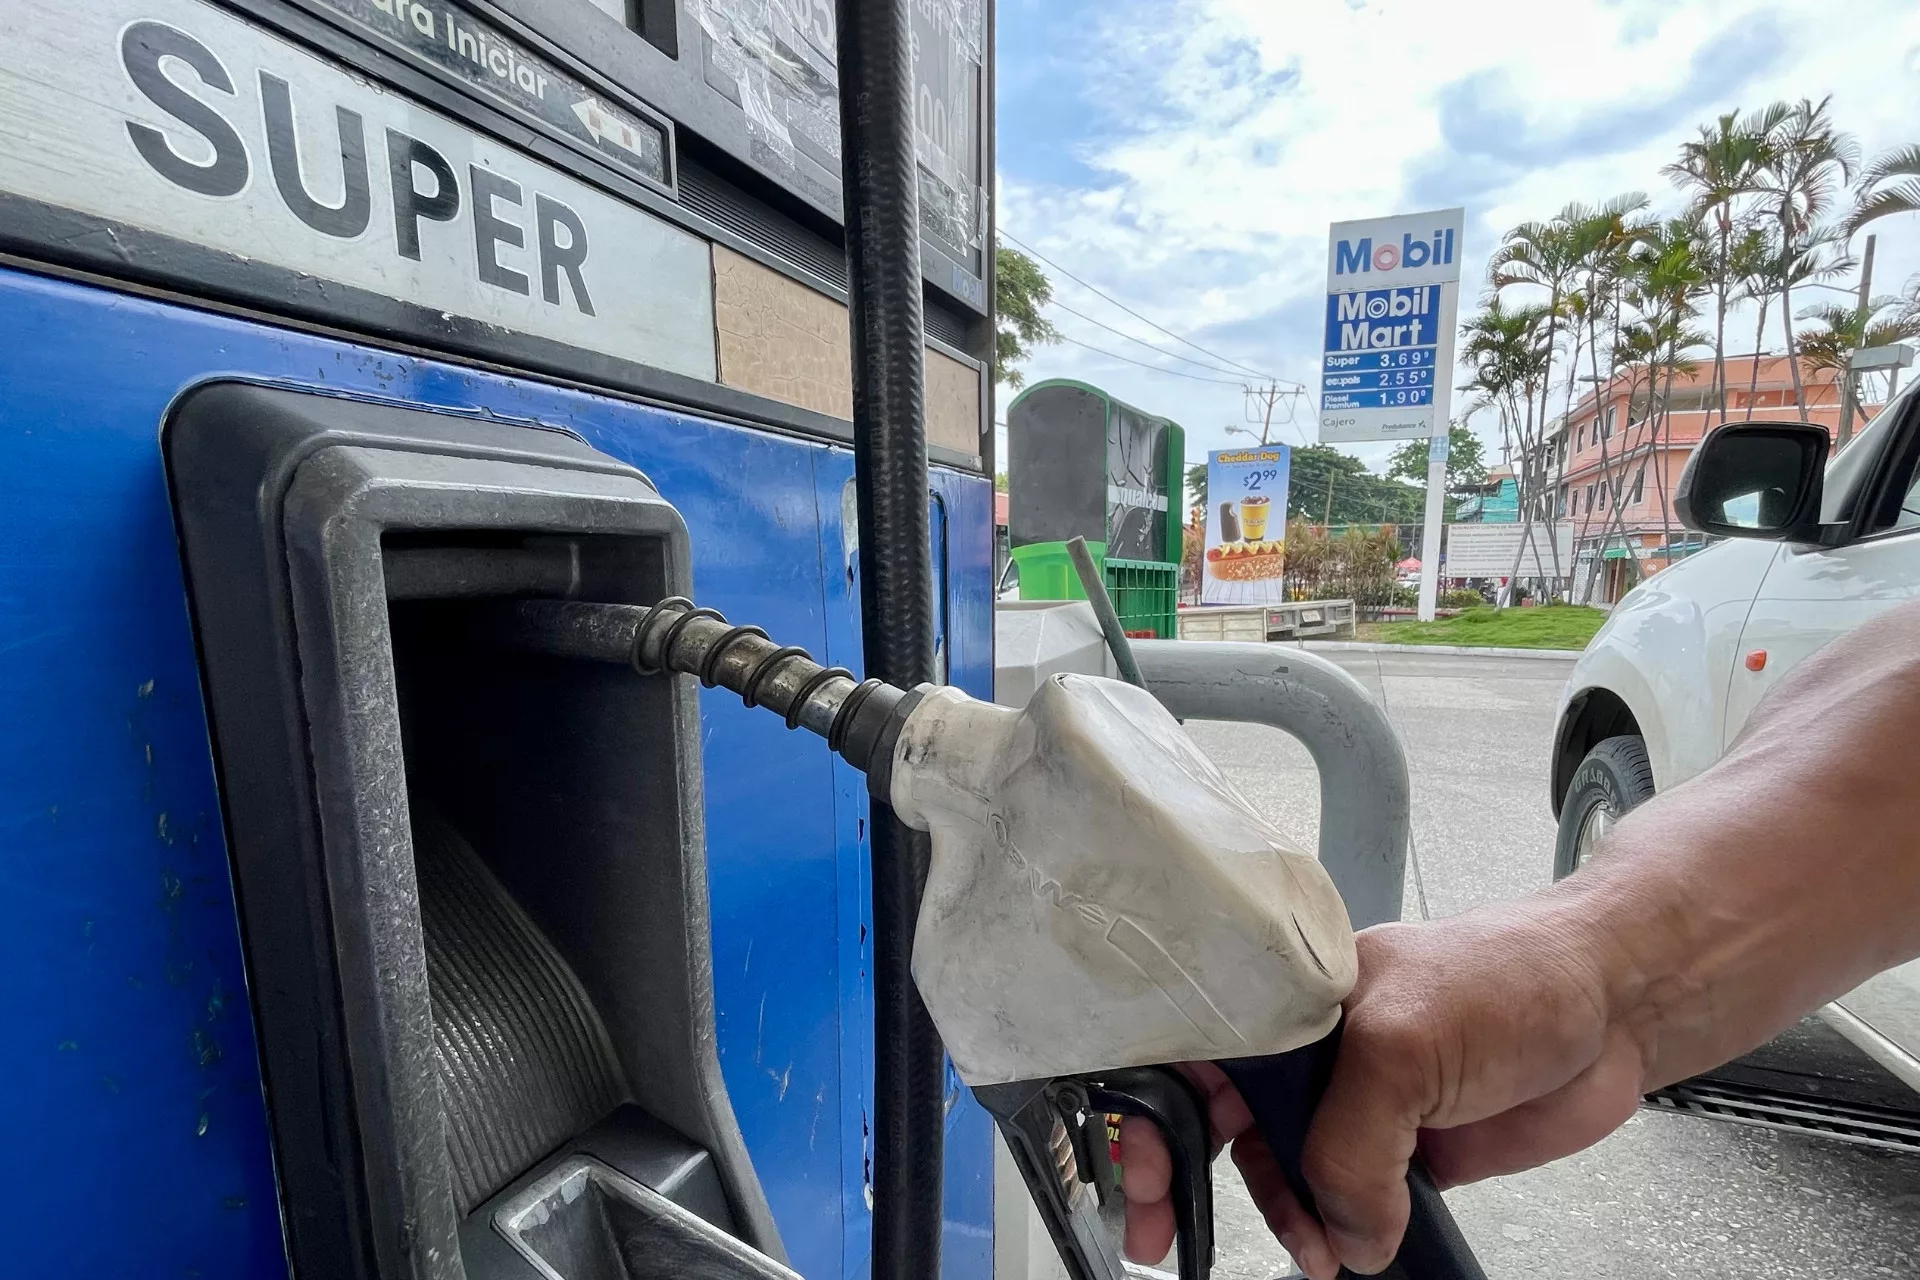 La gasolina súper tiene 95 octanos y la ecoplus tiene 89 octanos. Son los derivados con mayor octanaje dentro del mercado de gasolinas del sector automotor ecuatoriano.